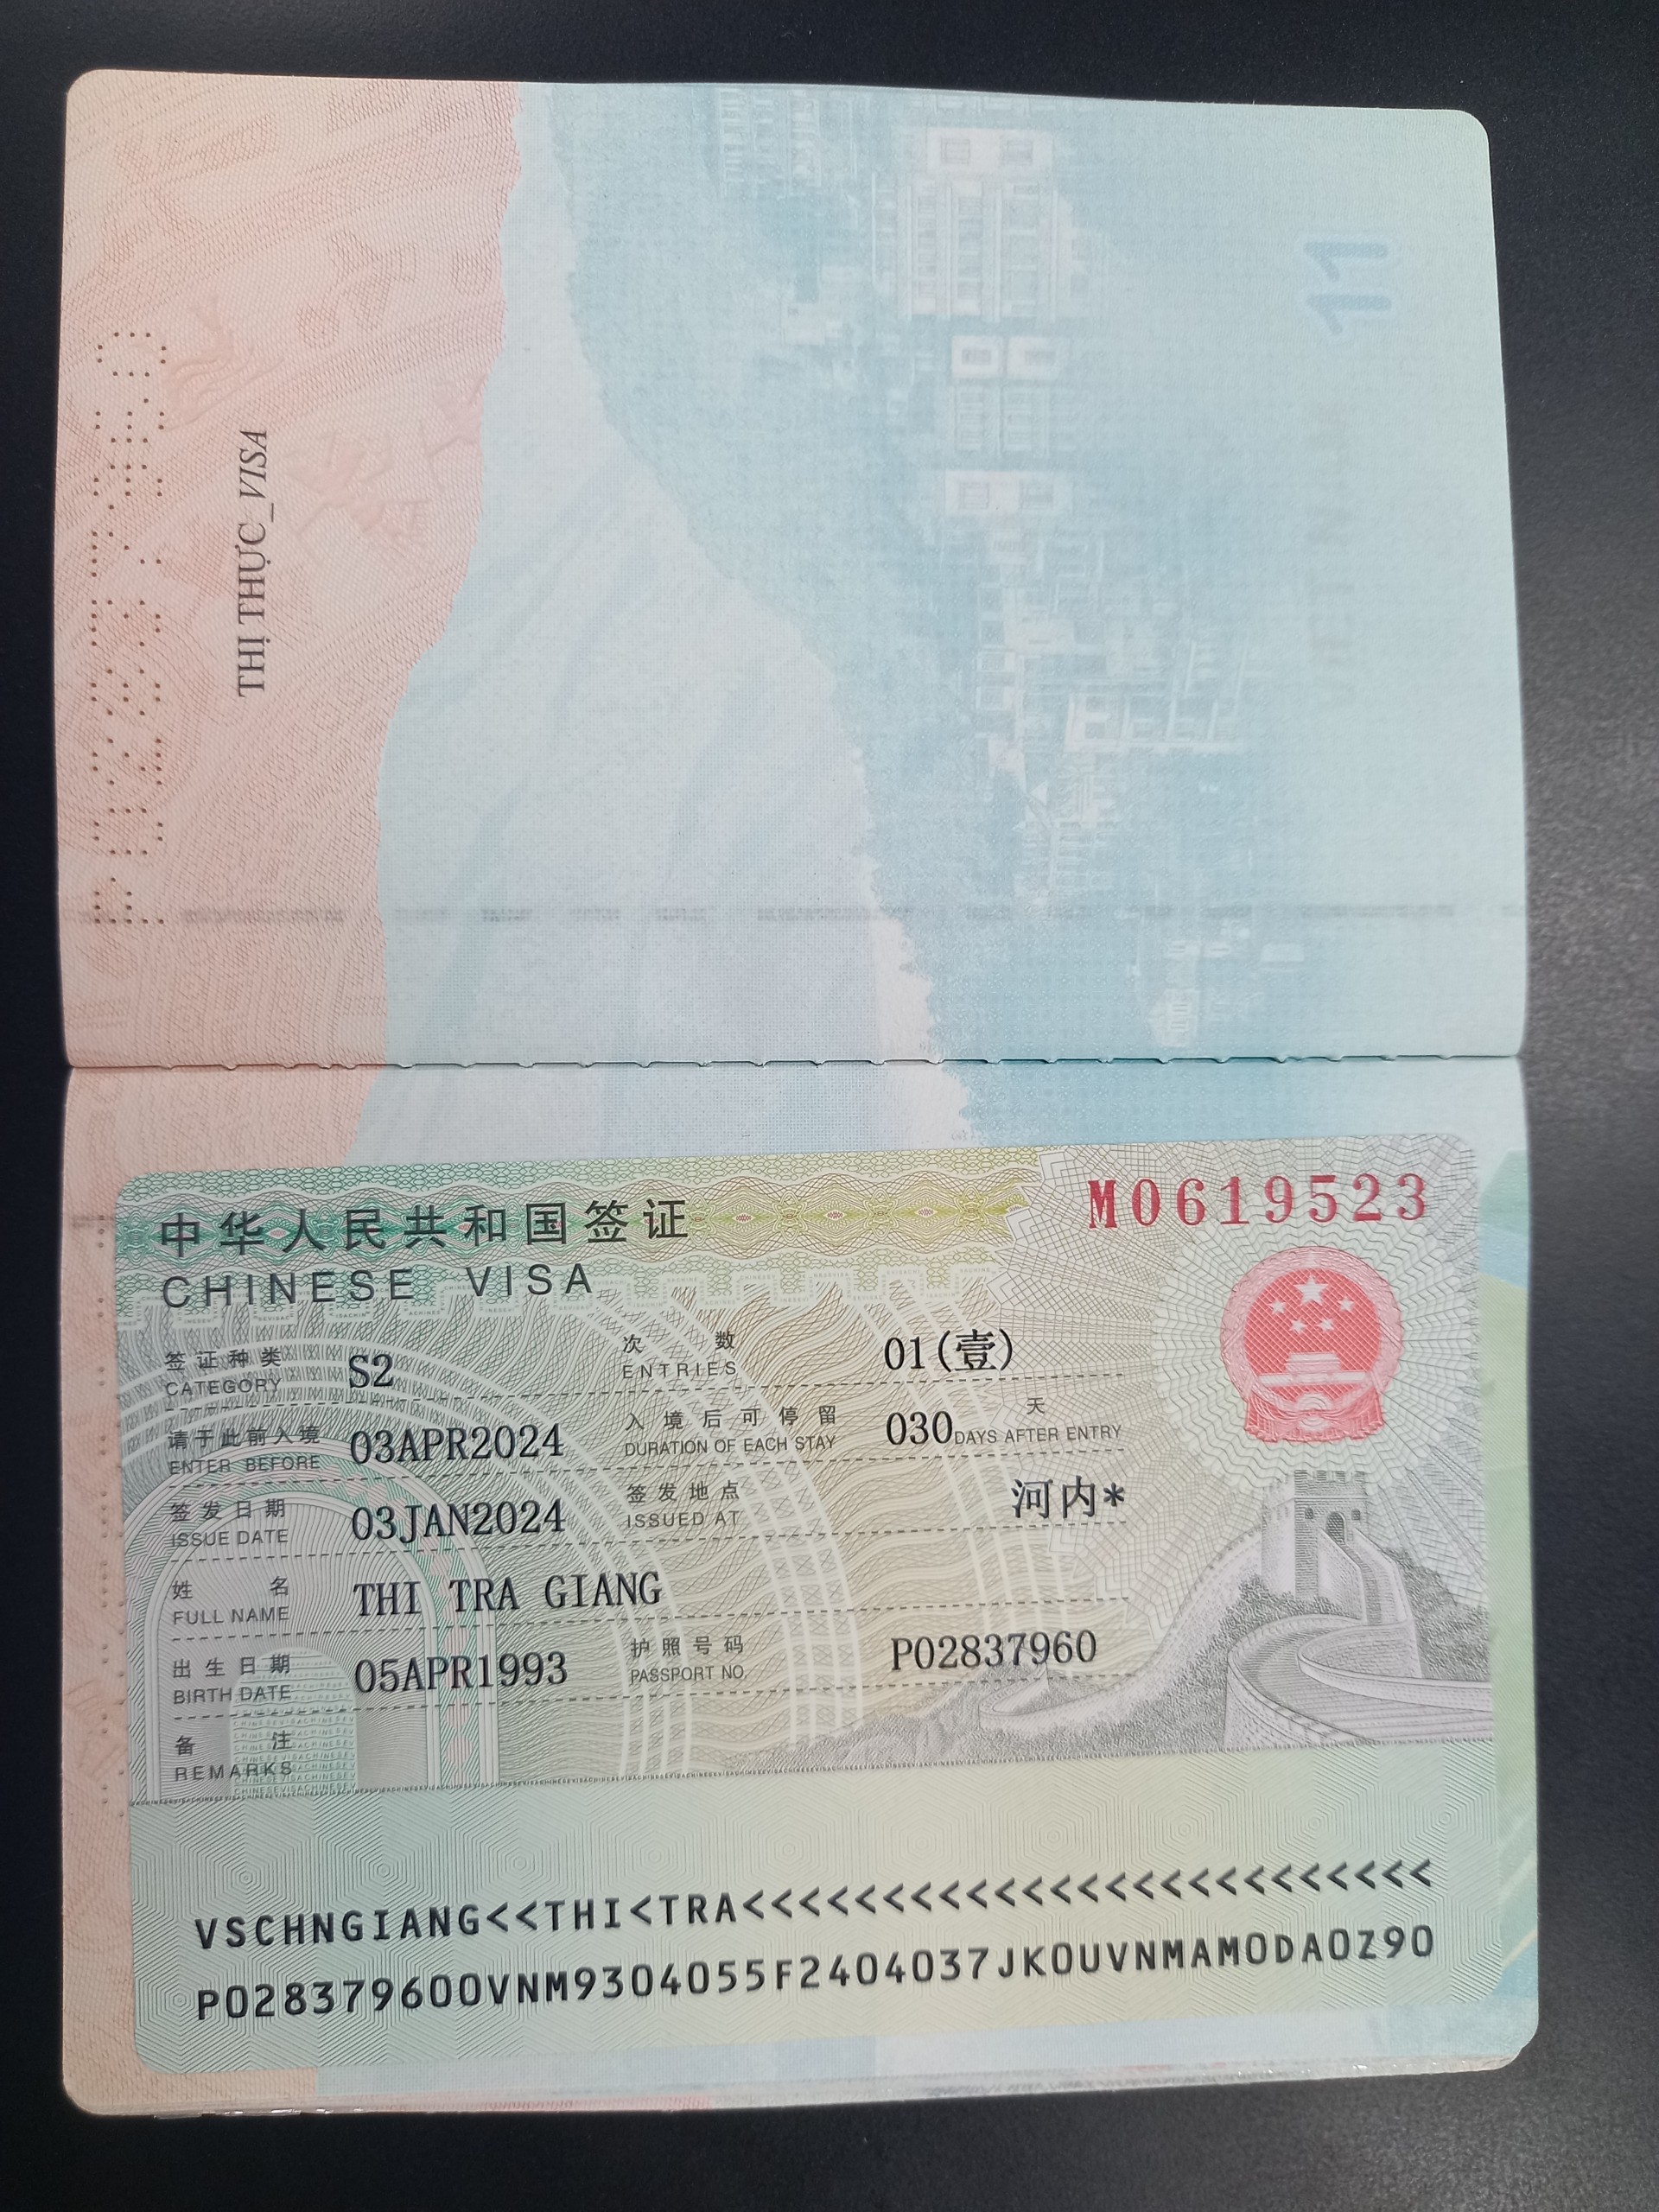 Visa kết hôn S2 | Giấy tờ đăng ký kết hôn với người Trung Quốc